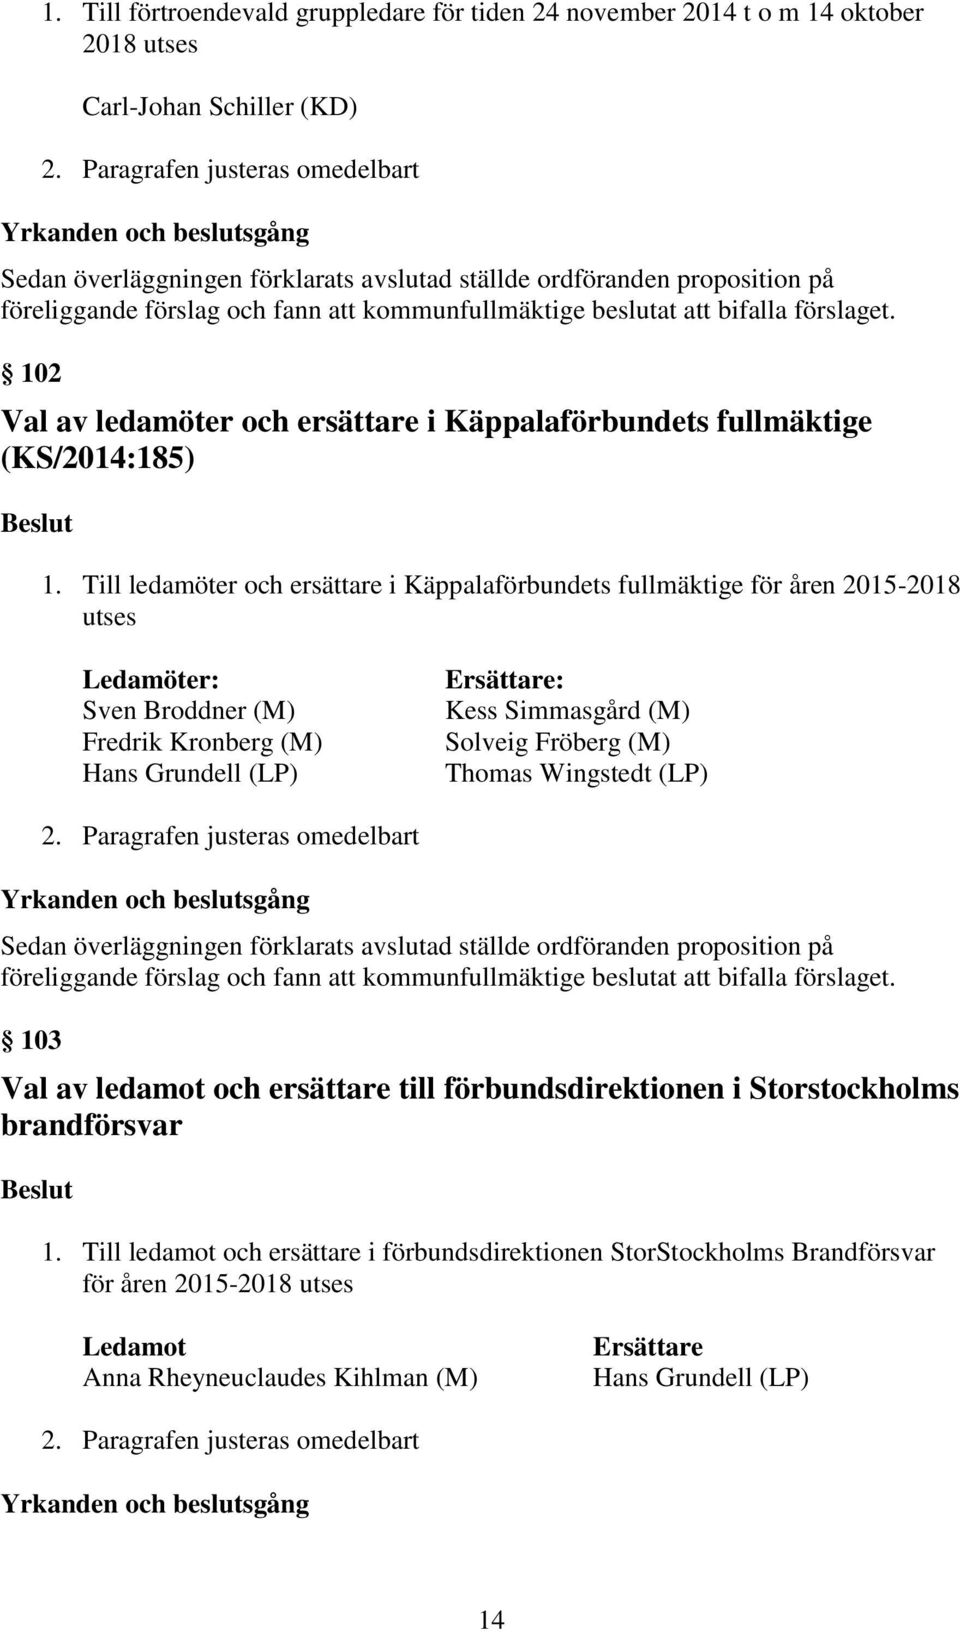 bifalla förslaget. 102 Val av ledamöter och ersättare i Käppalaförbundets fullmäktige (KS/2014:185) Beslut 1.